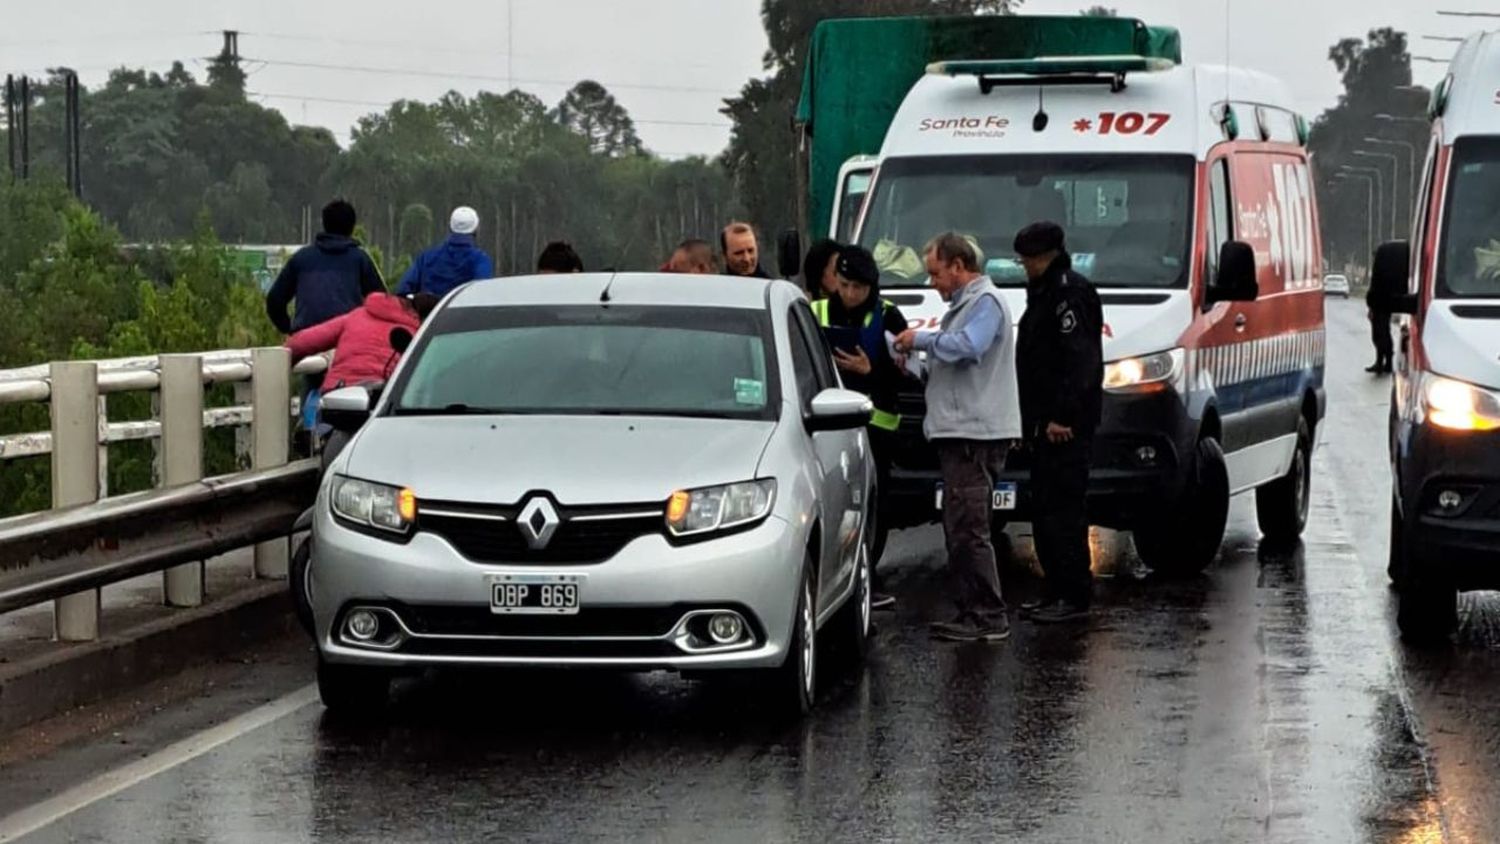 Caos vehicular y malestar por choque en cadena sobre el puente Reconquista-Avellaneda 